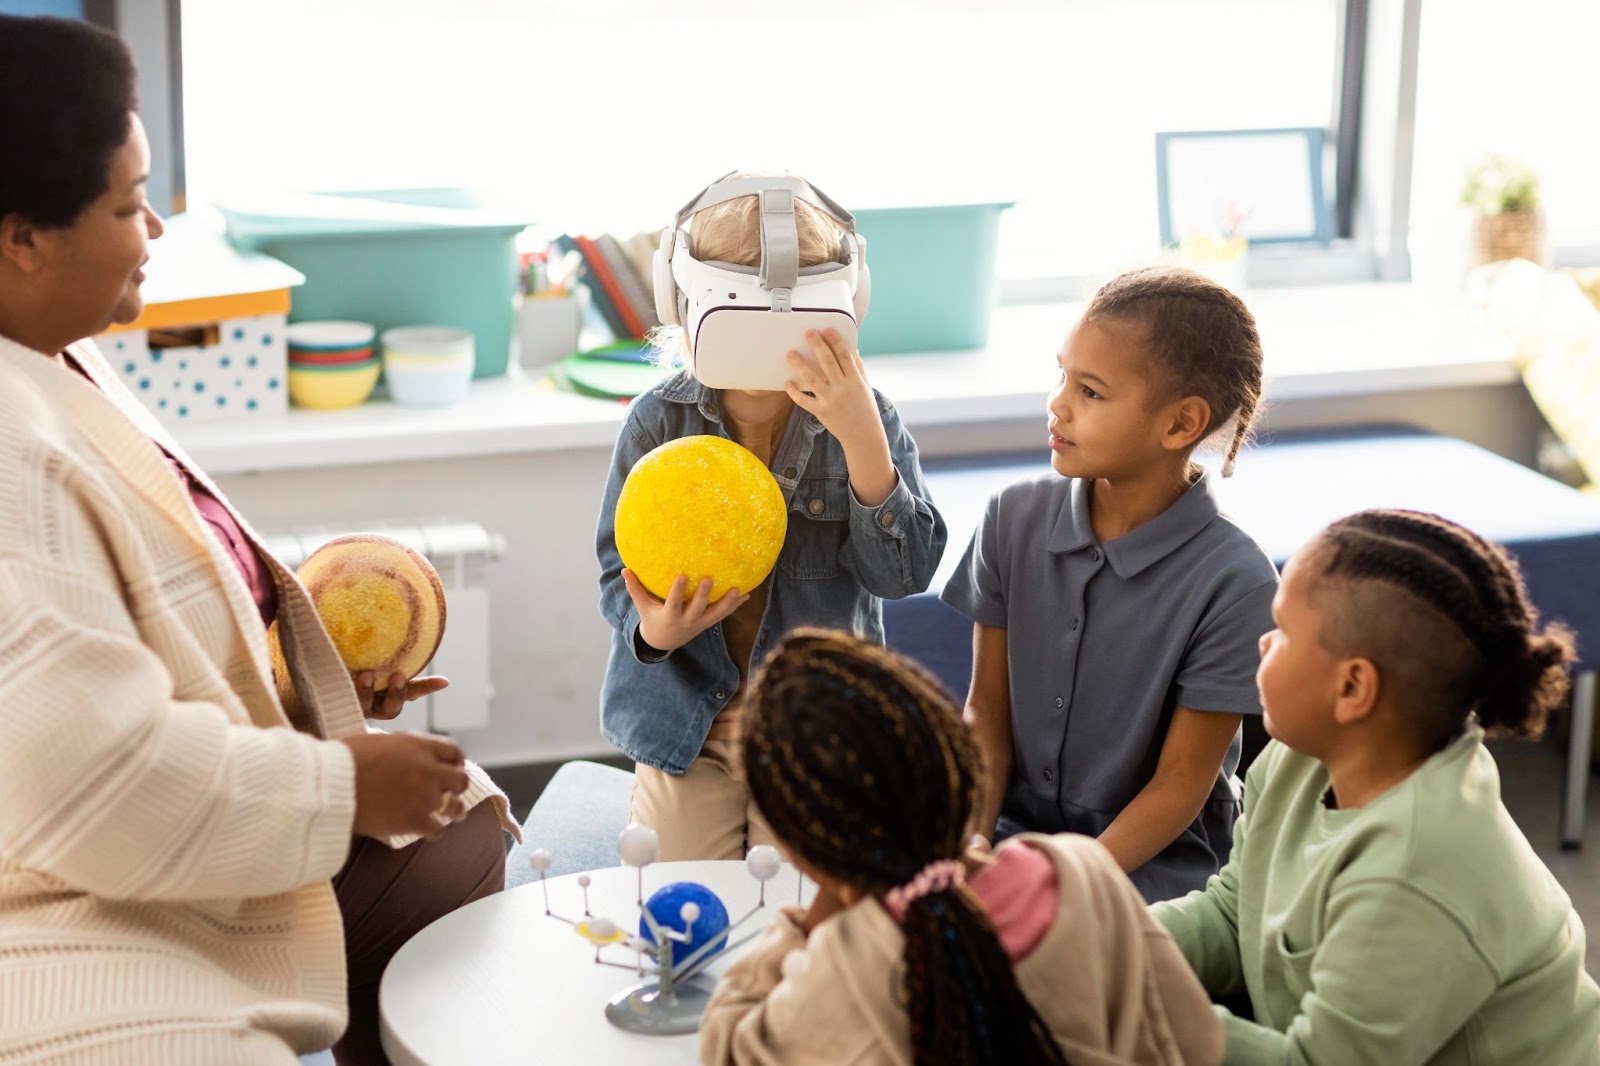 Sala de aula com uma professora e quatro alunos à sua frente, um deles está com óculos de realidade virtual enquanto segura um planeta retirado da representação do sistema solar. A imagem representa o edutainment em sala de aula.